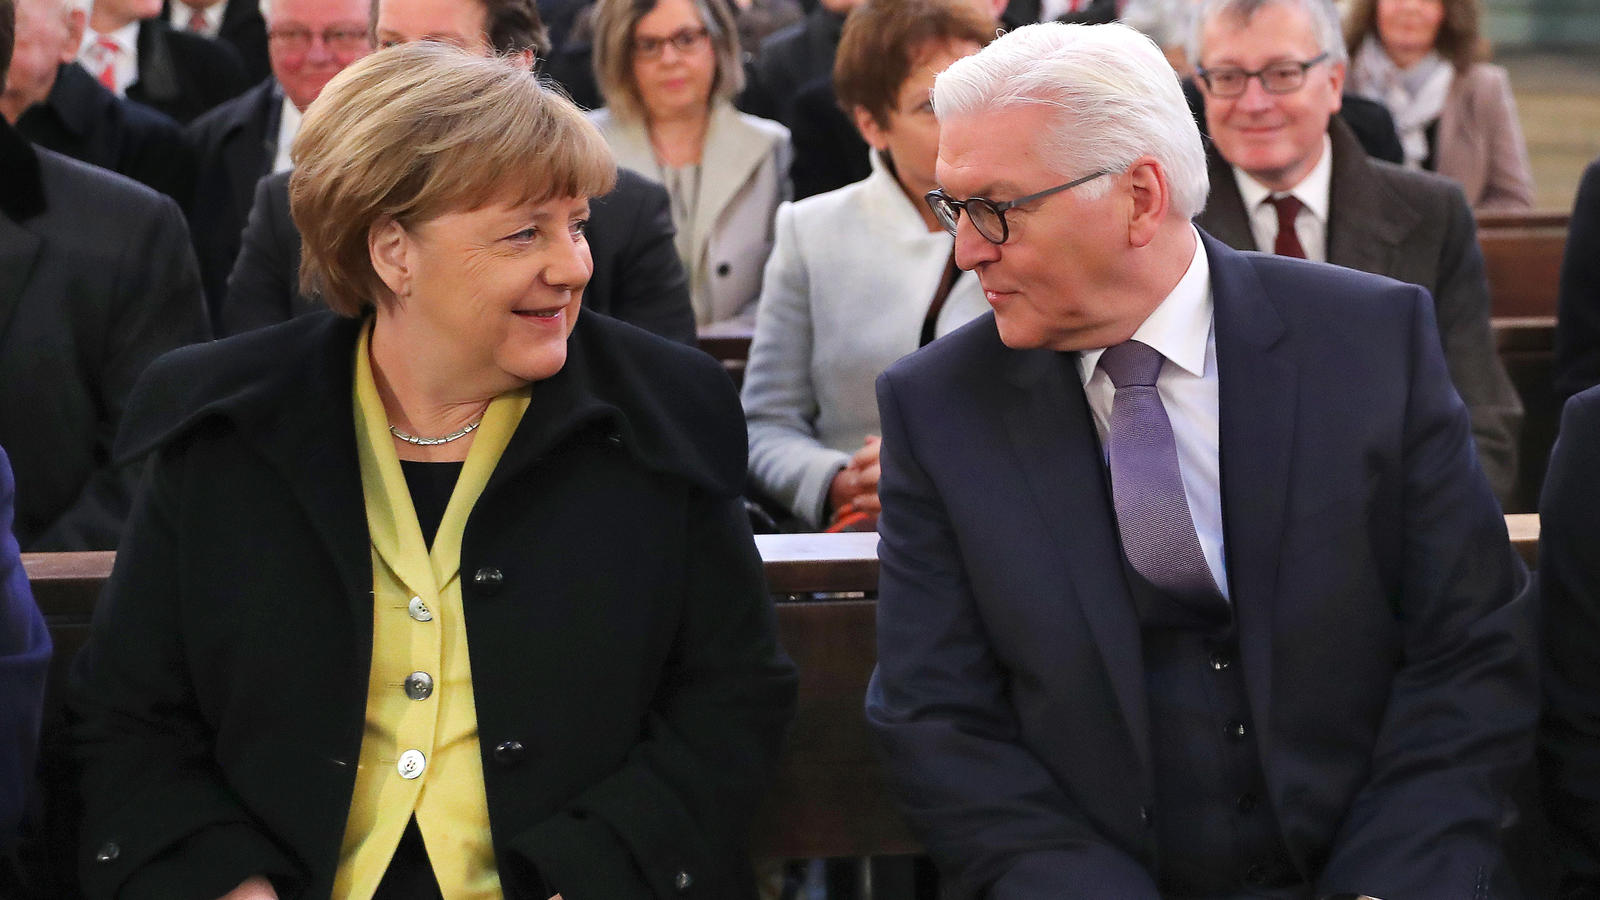 Frank-Walter Steinmeier (SPD), Kandidat bei der Wahl zum Bundespräsidenten, und Bundeskanzlerin Angela Merkel (CDU) sitzen am 12.02.2017 in Berlin in der St. Hedwigs-Kathedrale beim Gottesdienst vor der Wahl des Bundespräsidenten zusammen.